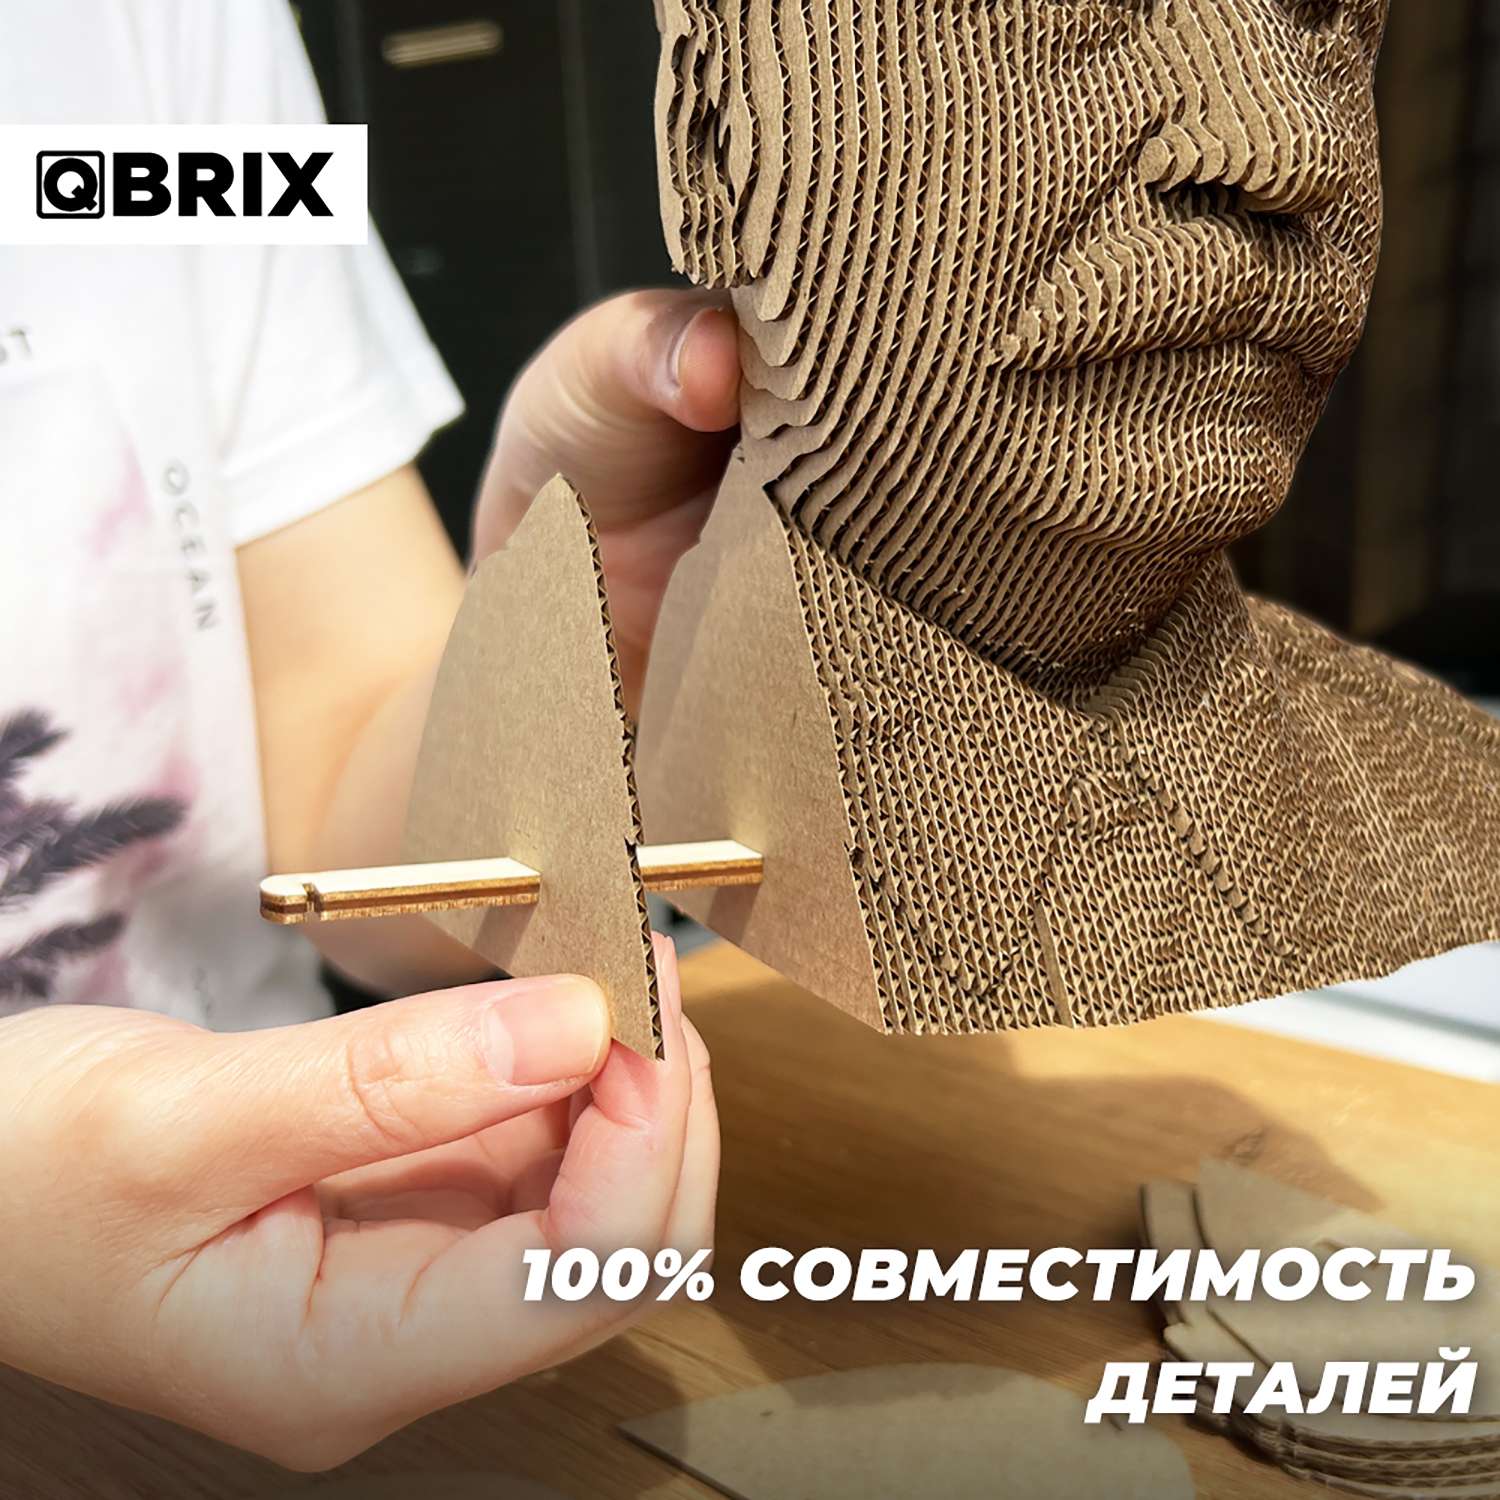 Конструктор QBRIX 3D картонный Сталин 20033 20033 - фото 5